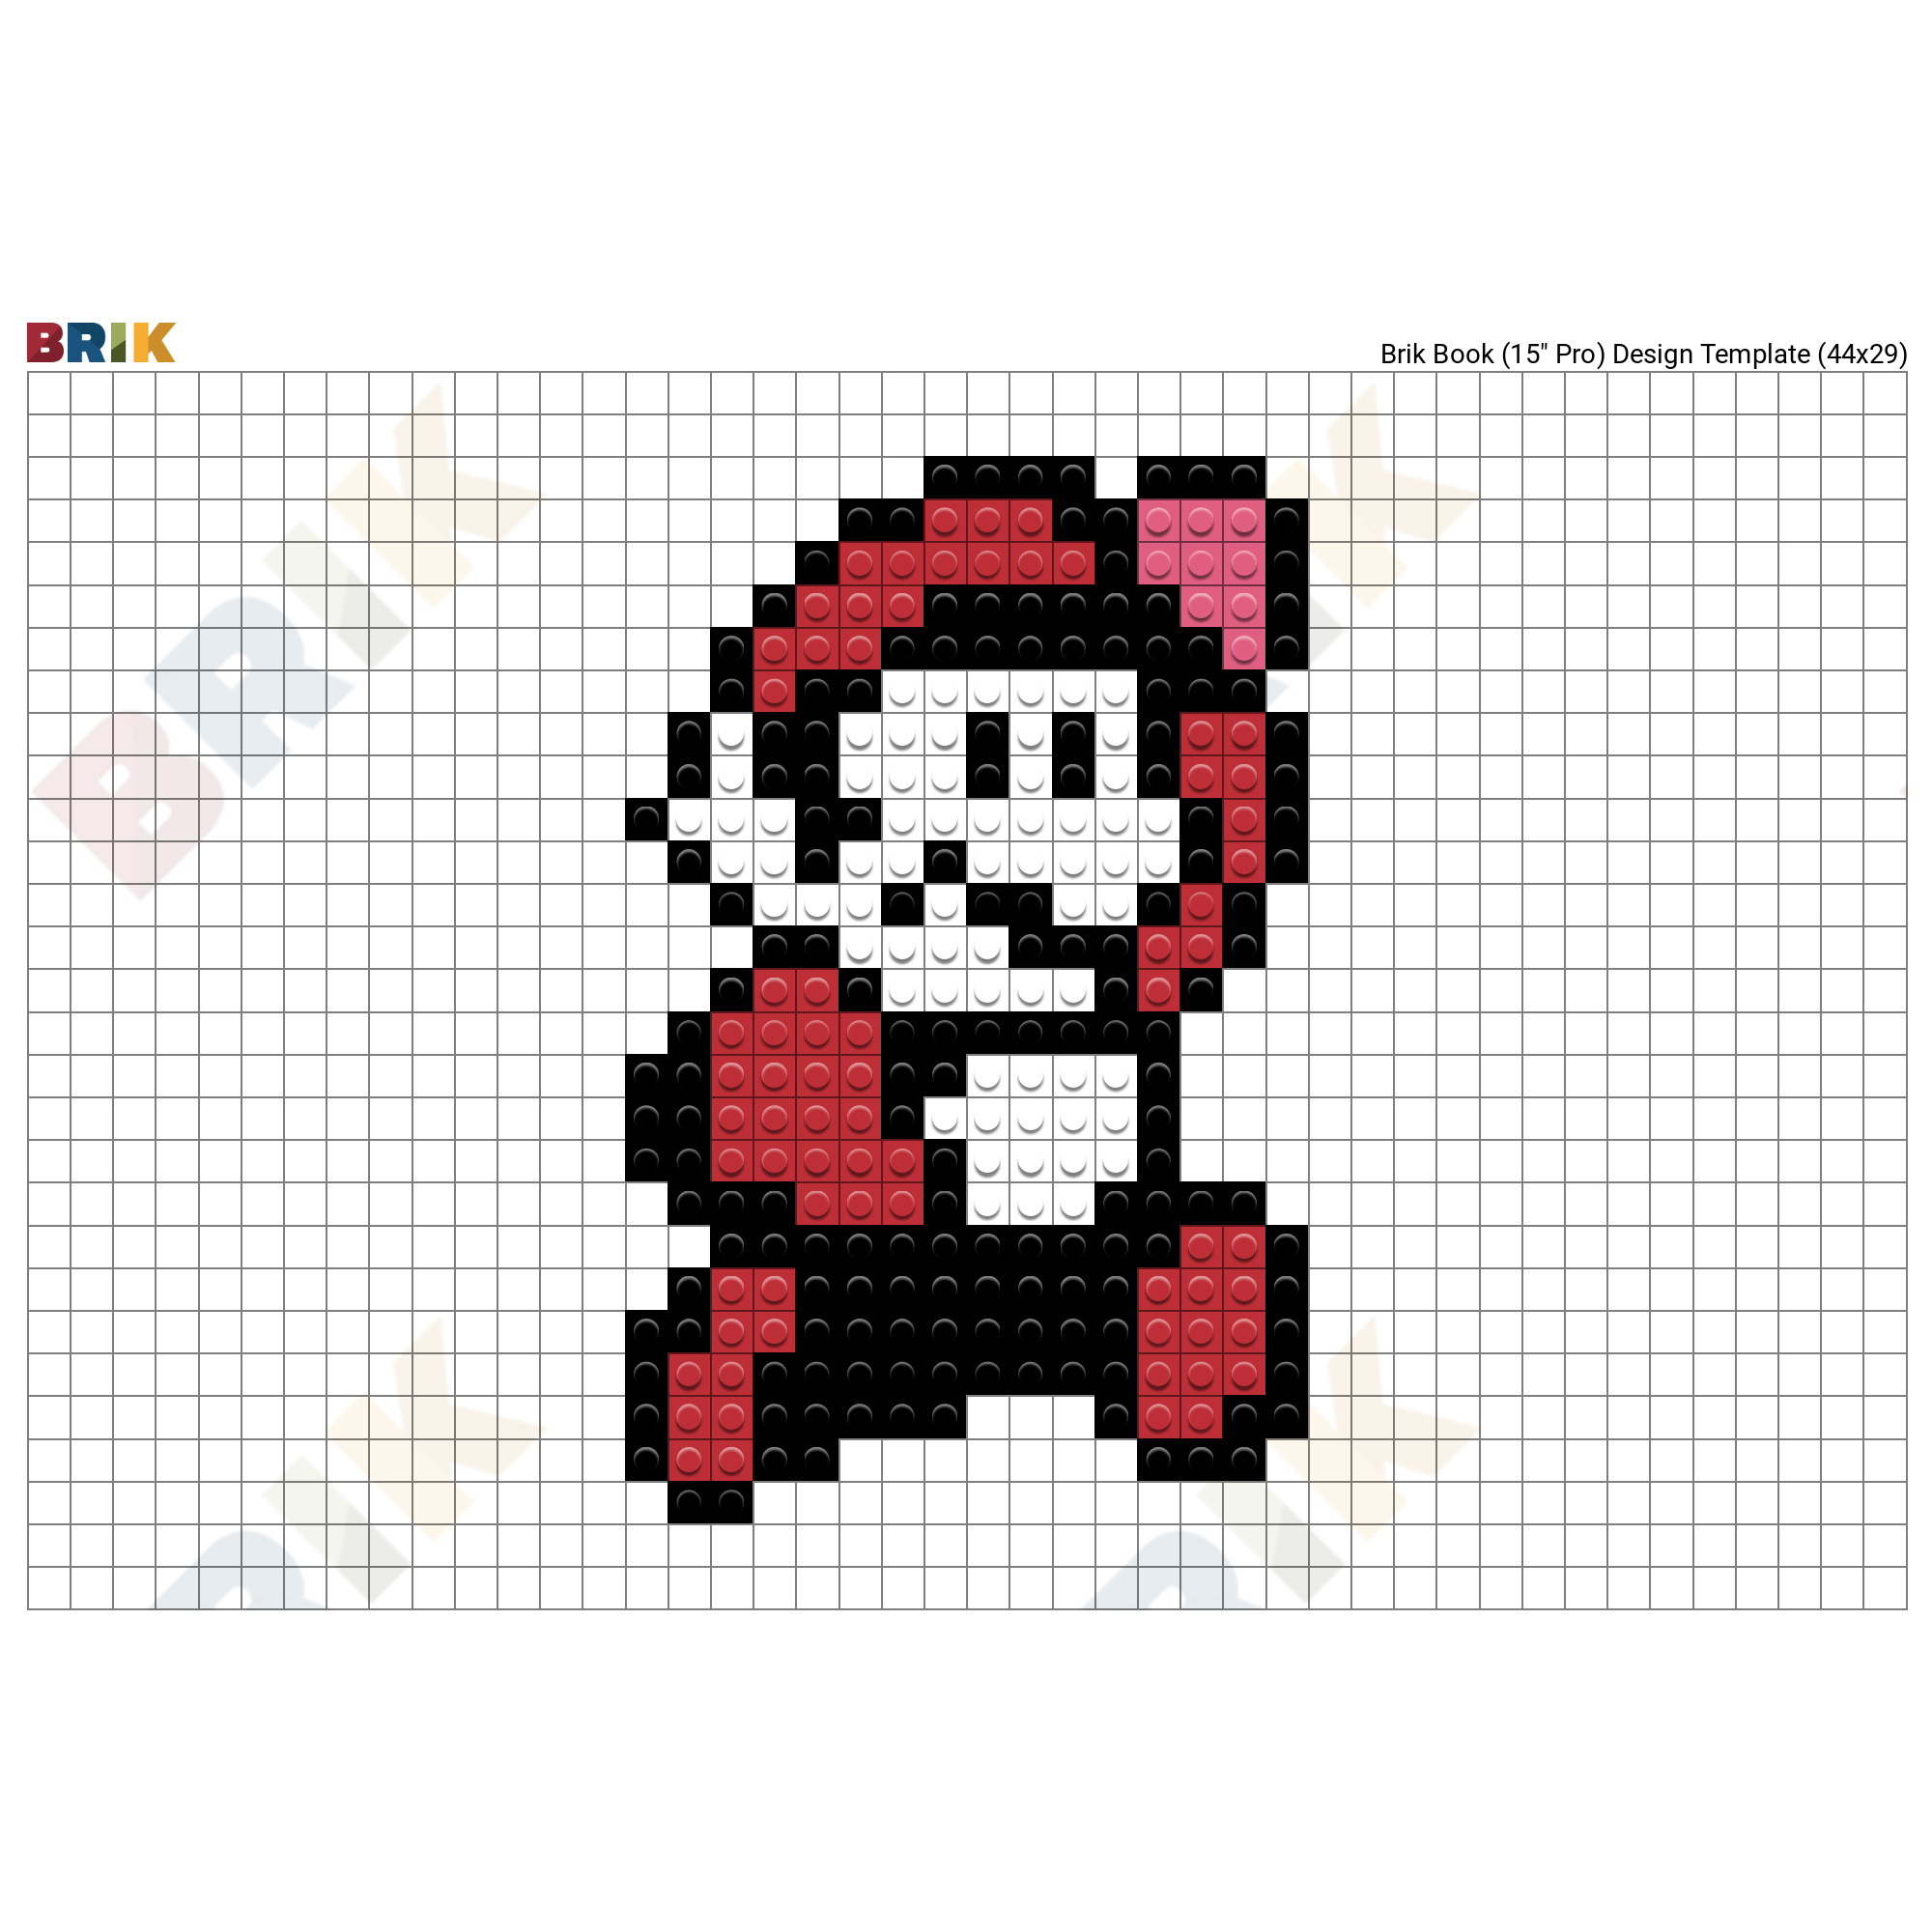 Марио пиксель арт 8*8 по клеточкам в ручную